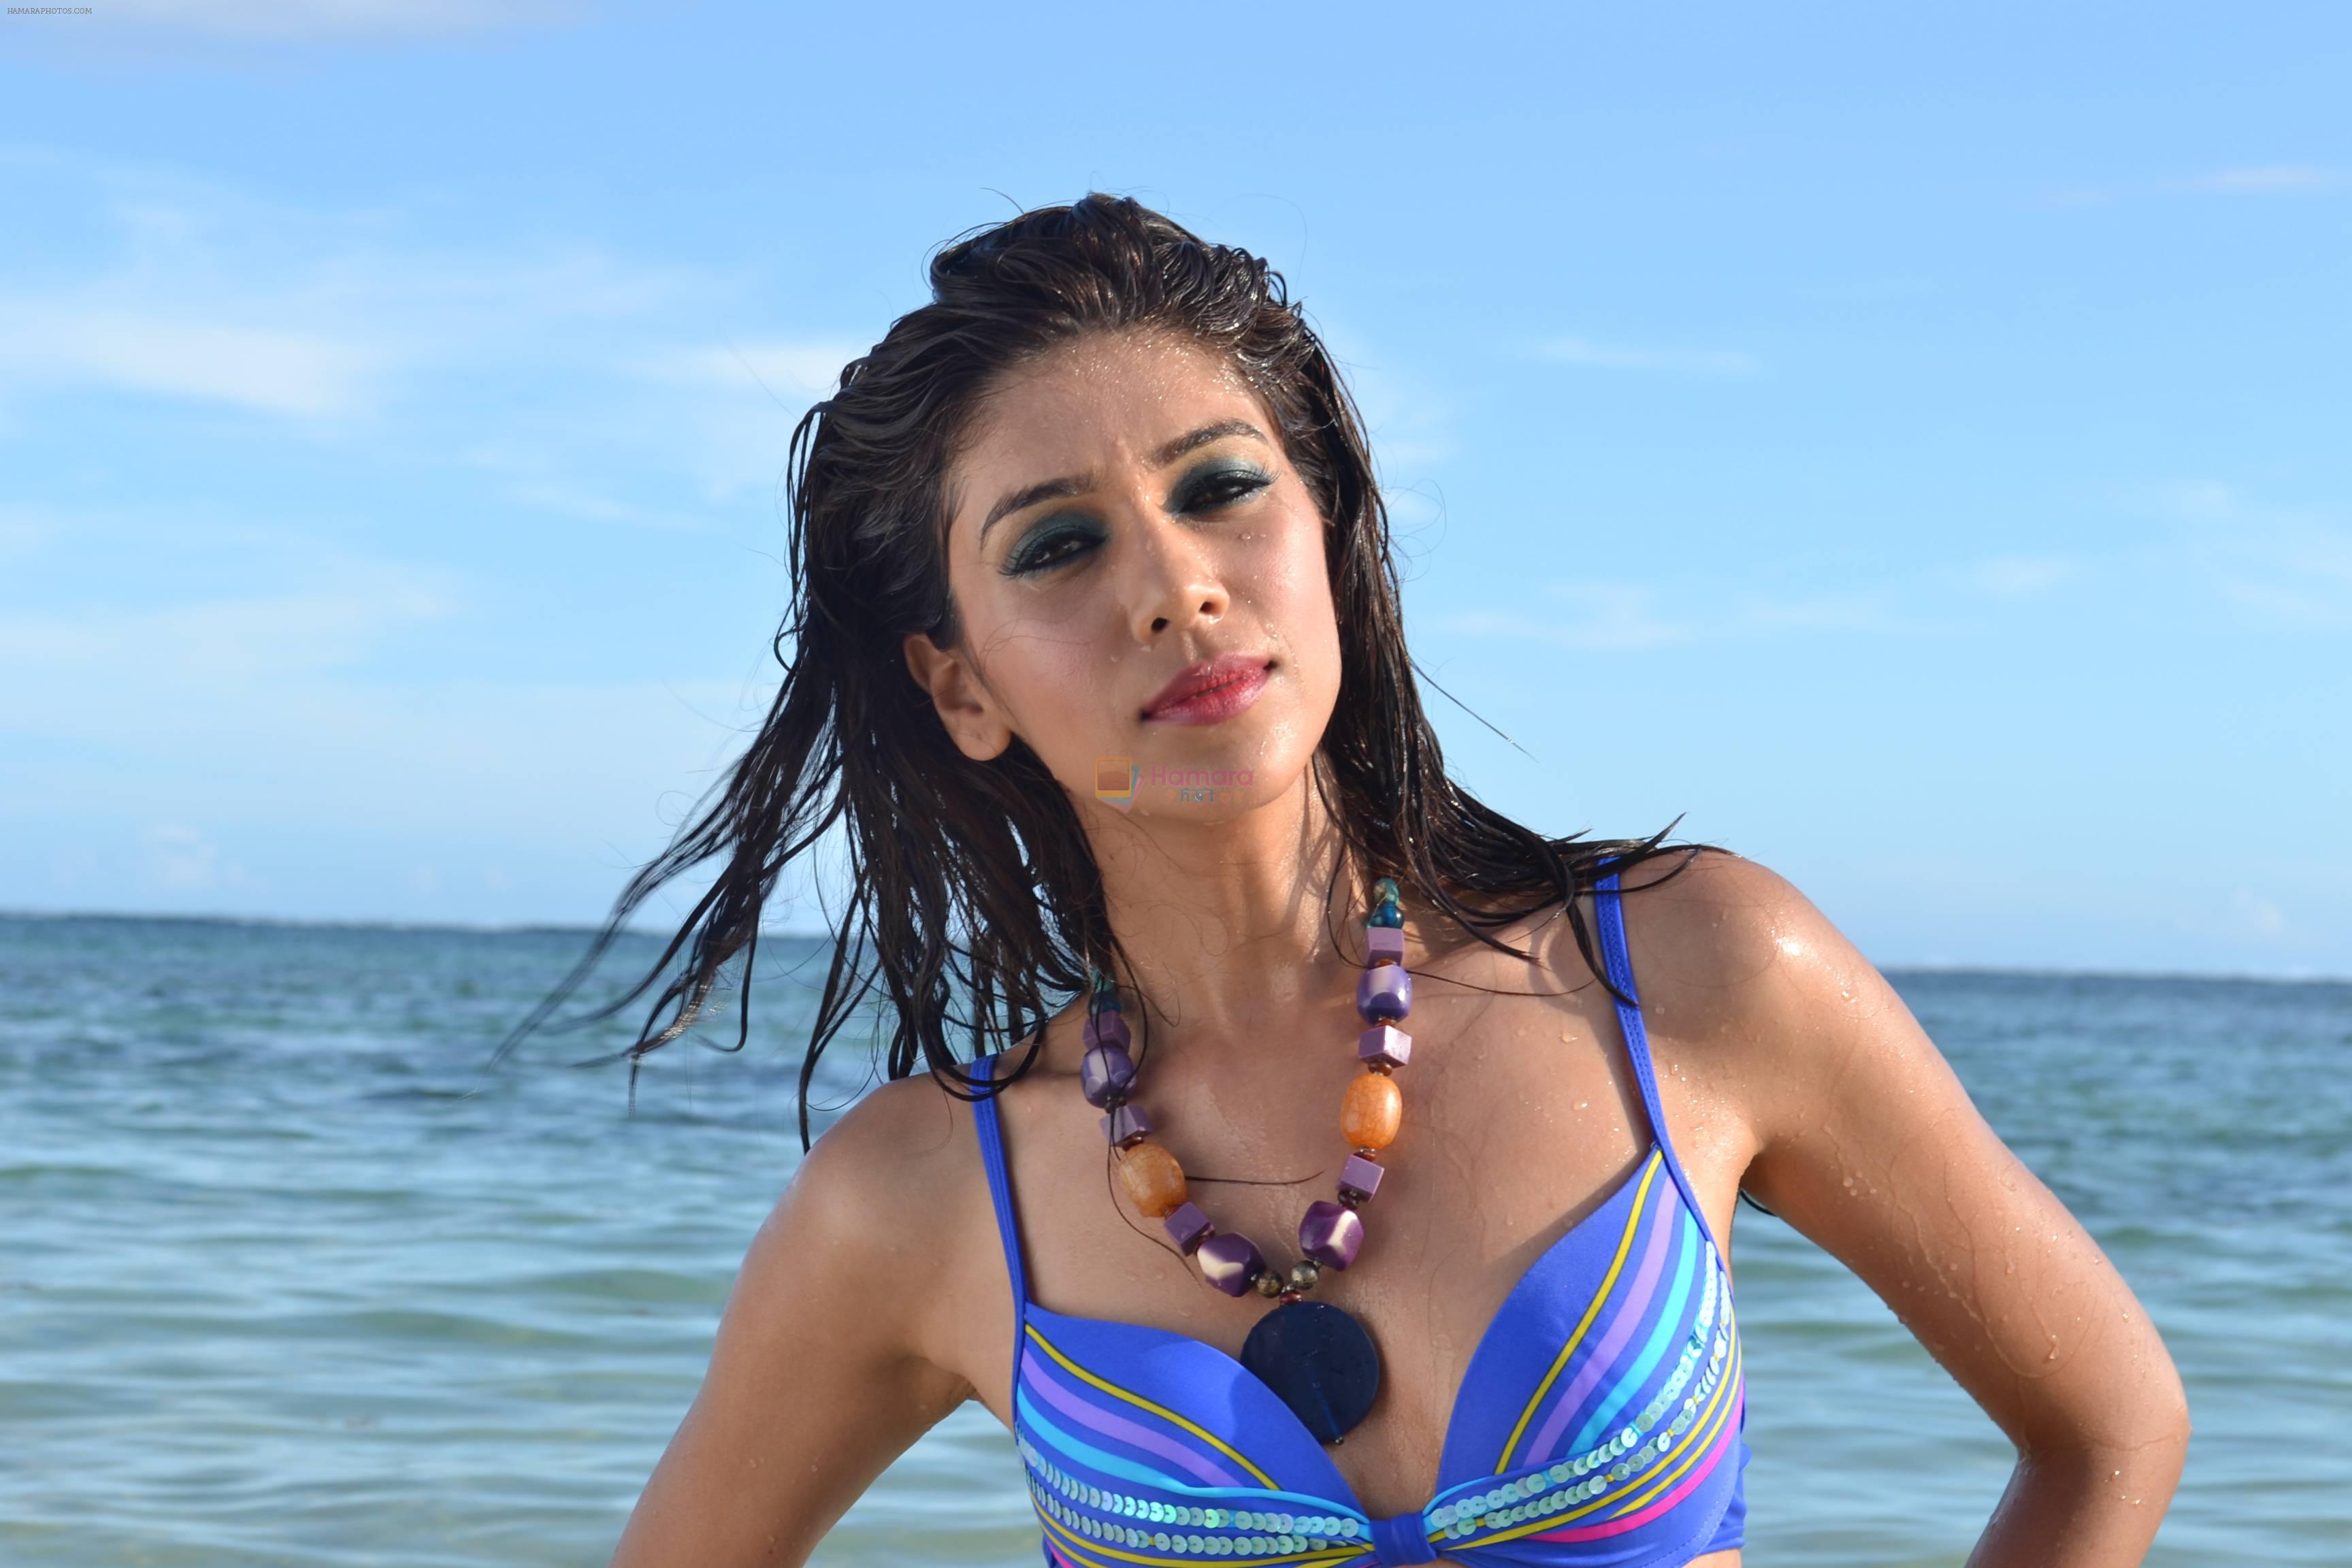 Archana Vadnerkar in movie still featuring Bikini Shoot for Super Model 